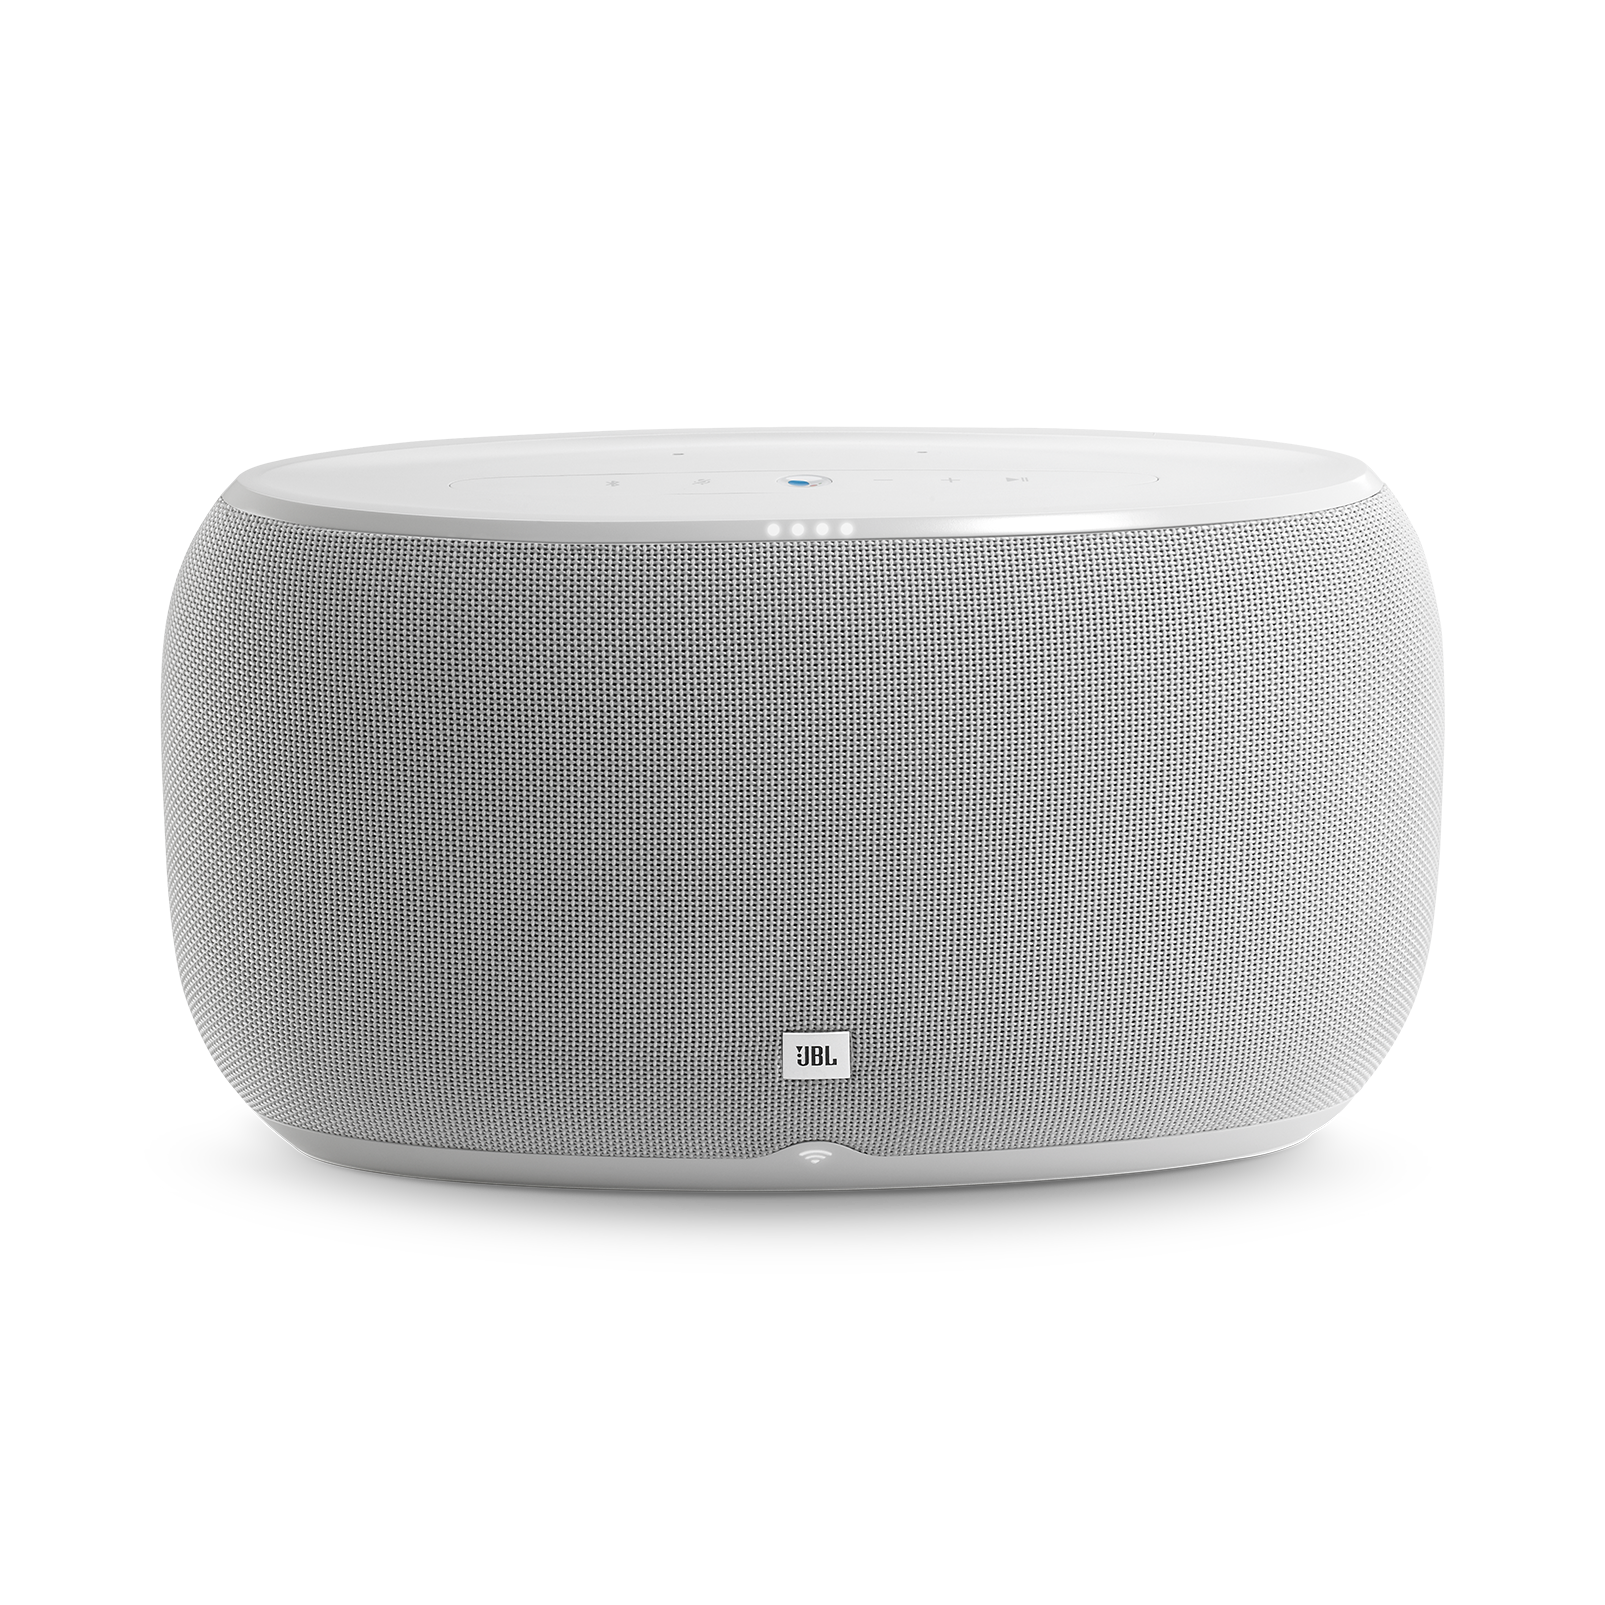 JBLLINK500WHTUK, voice-activated speaker, white